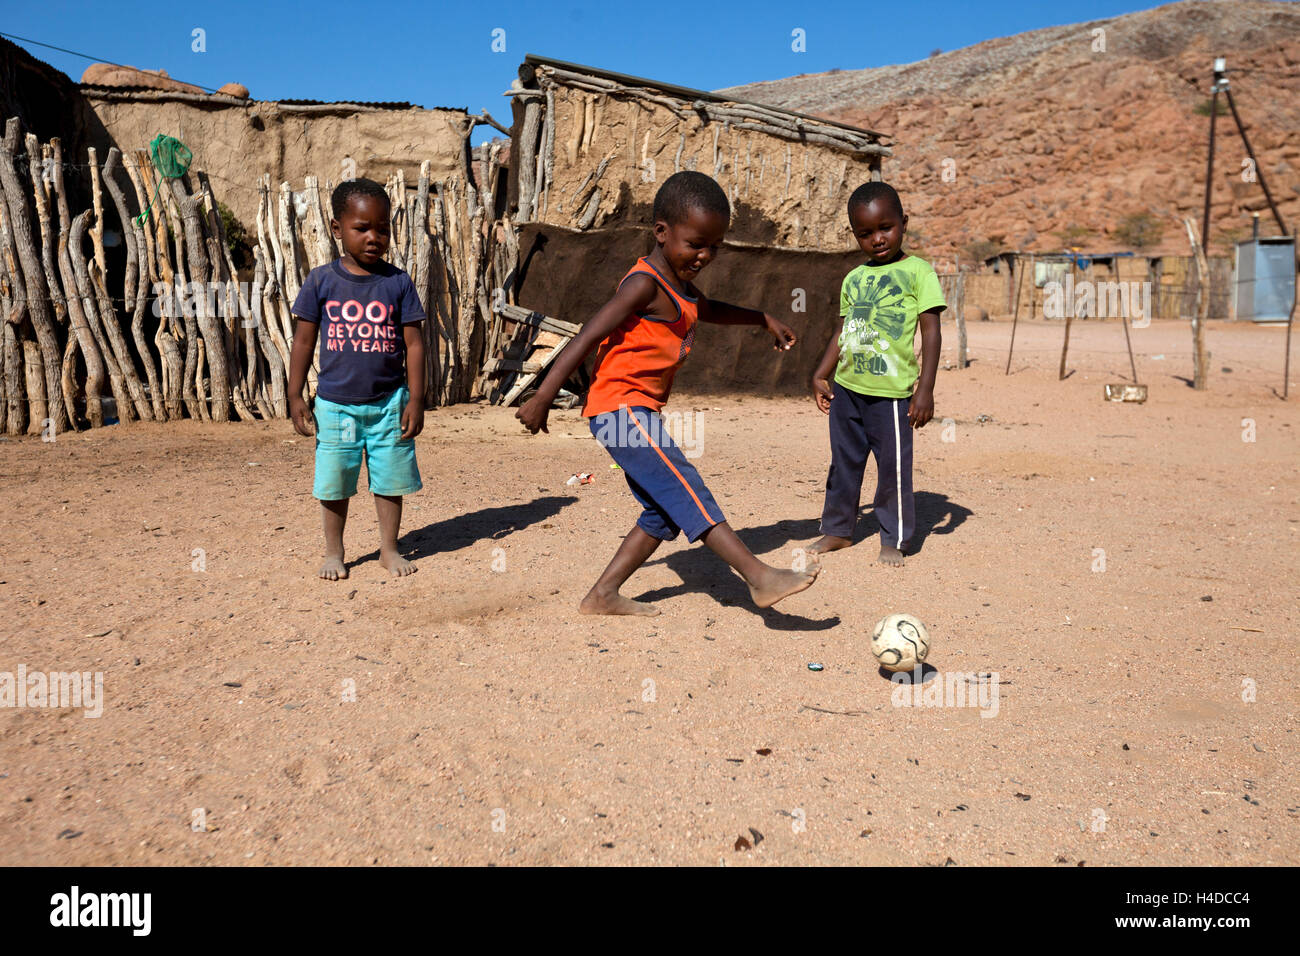 Nicht identifizierte afrikanischen jungen spielen Fußball in Damaraland Dorf in Namibia, Südafrika Stockfoto